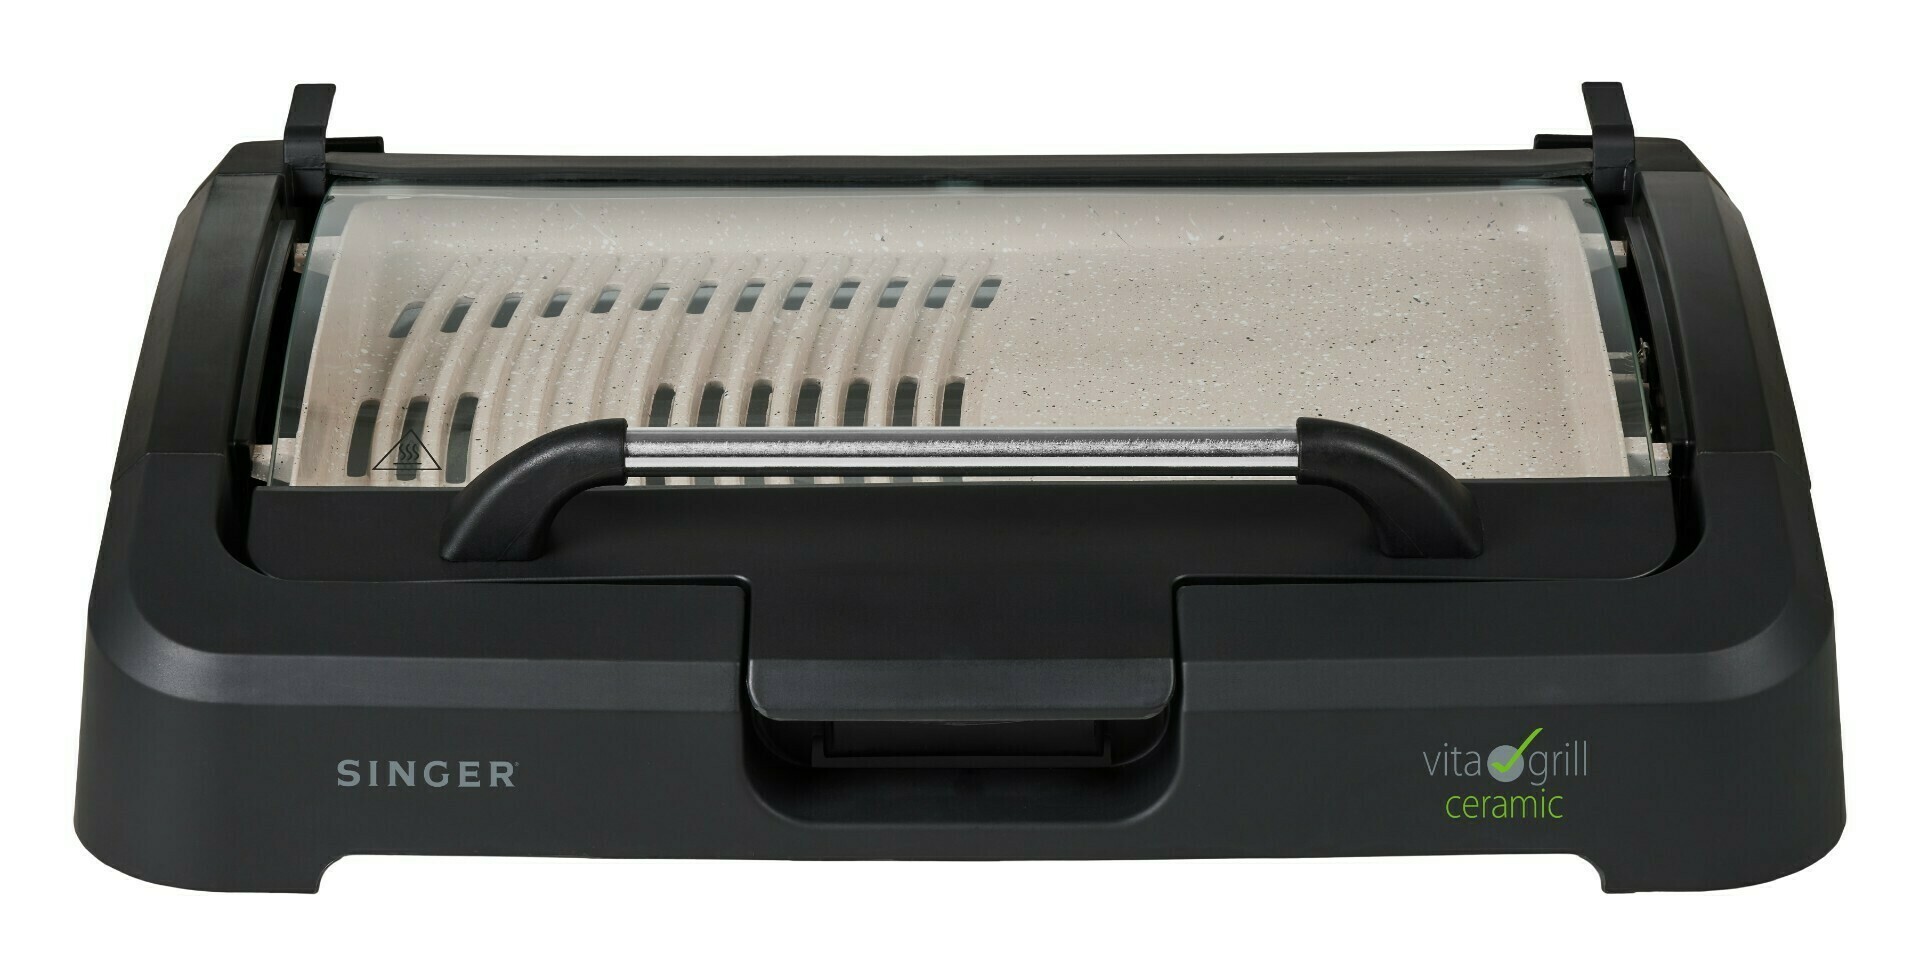 VITA GRILL VG-2200